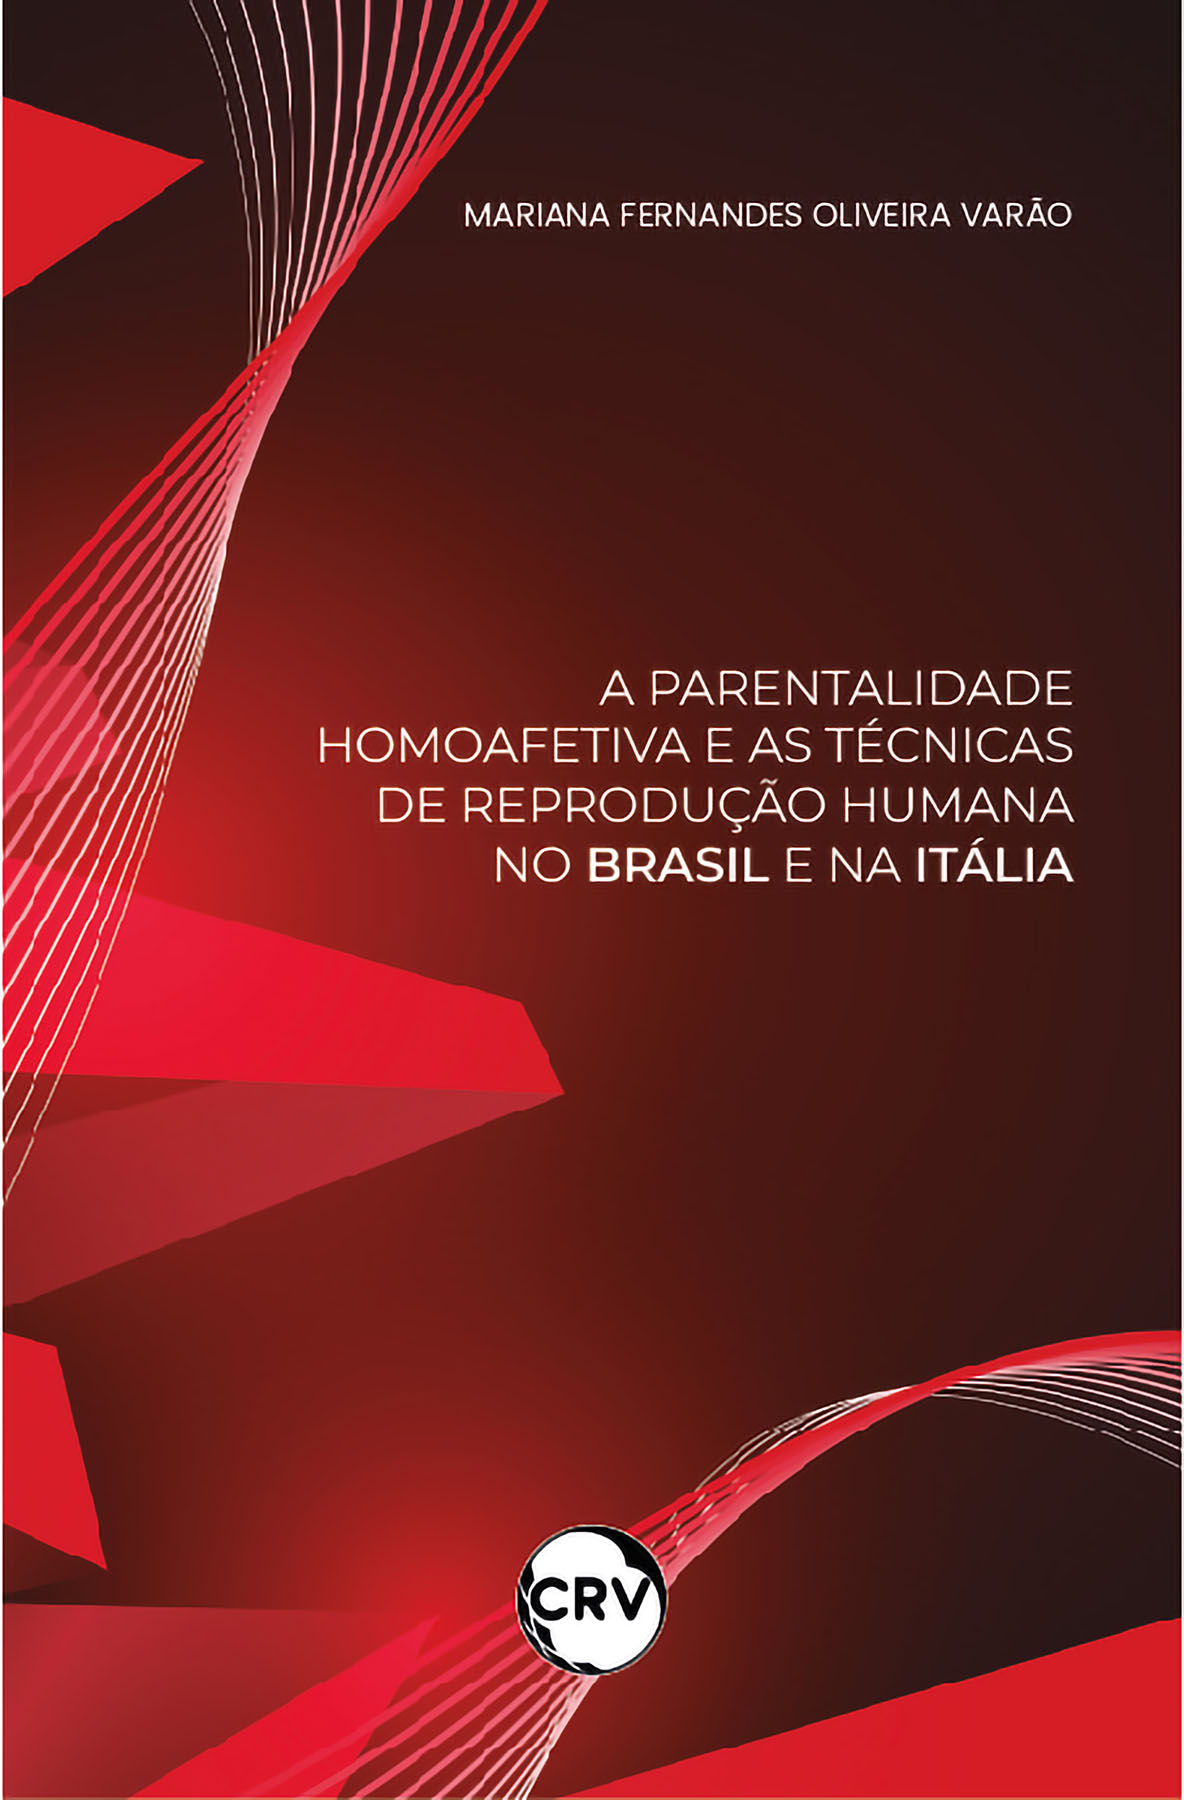 Capa do livro: A parentalidade homoafetiva e as técnicas de reprodução humana no brasil e na itália